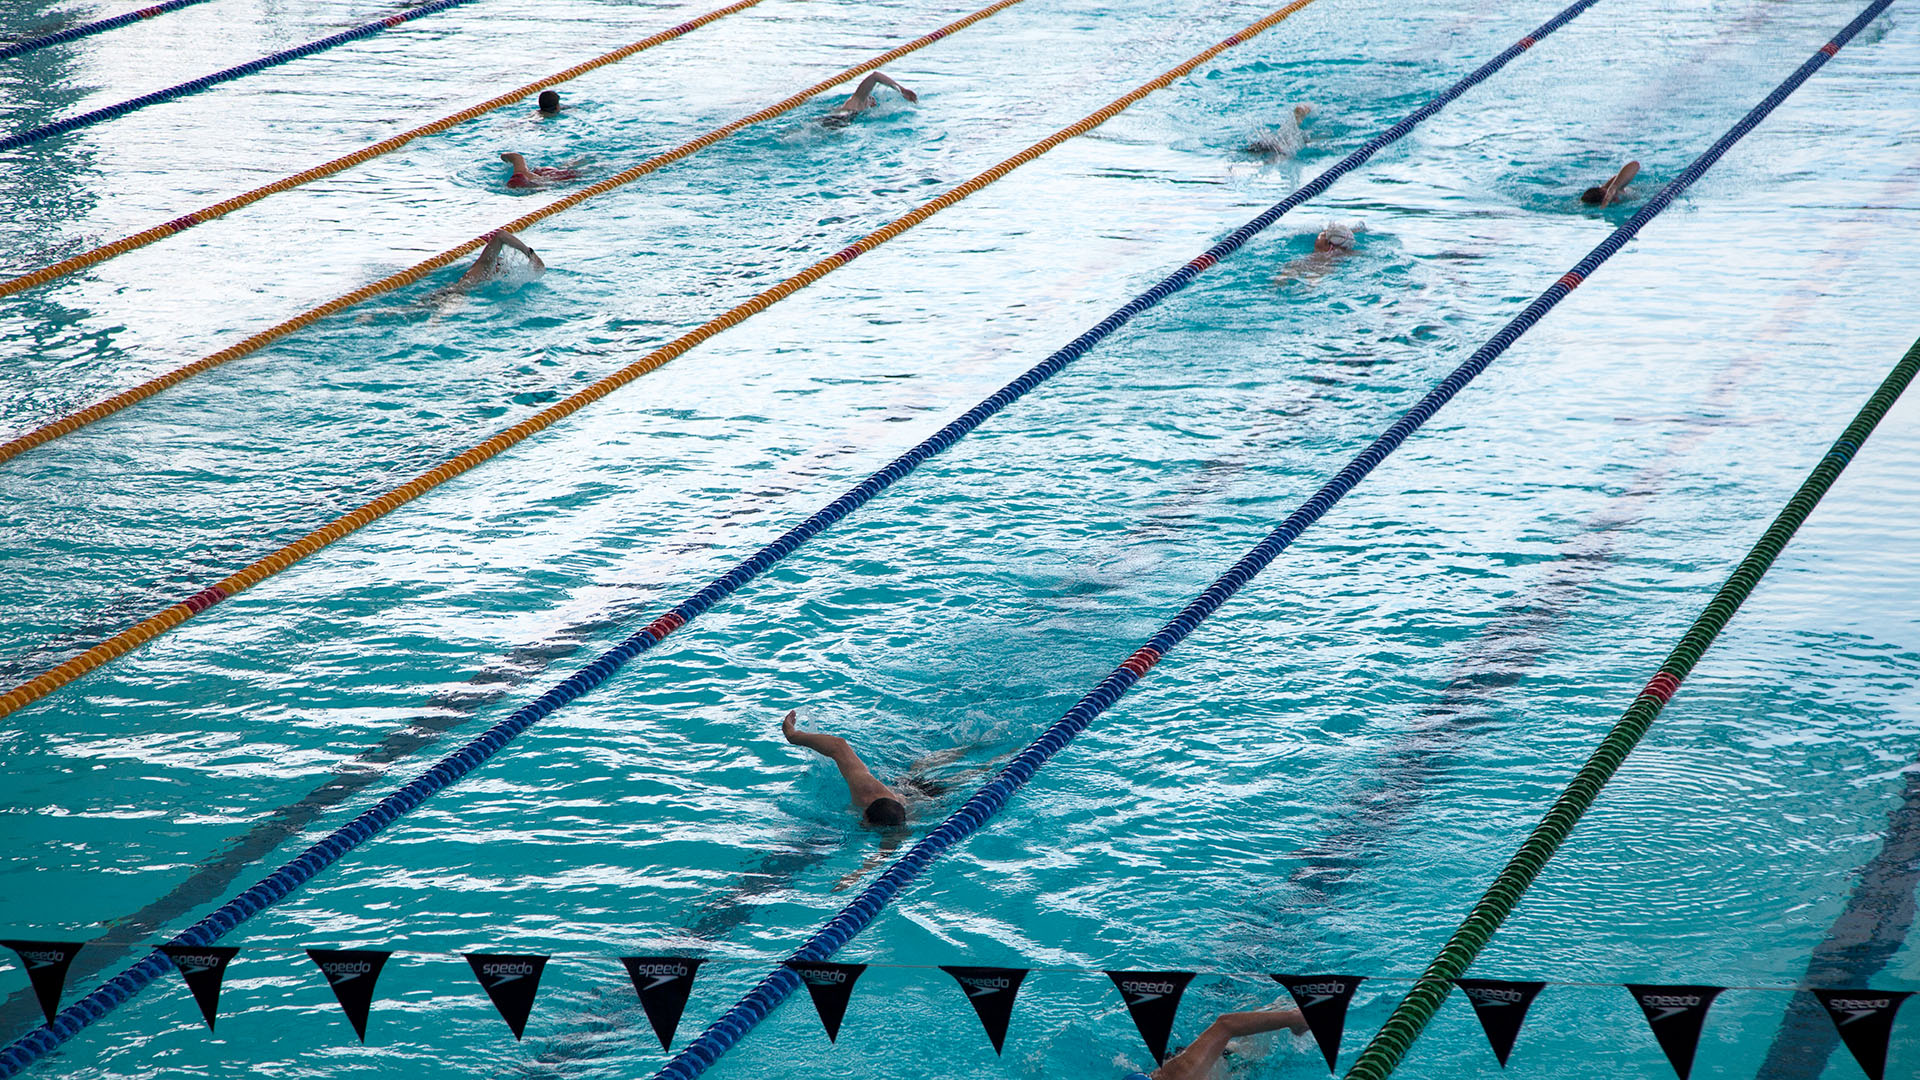 Schwimmer trainieren im Schwimmbecken  | picture alliance / VisualEyze